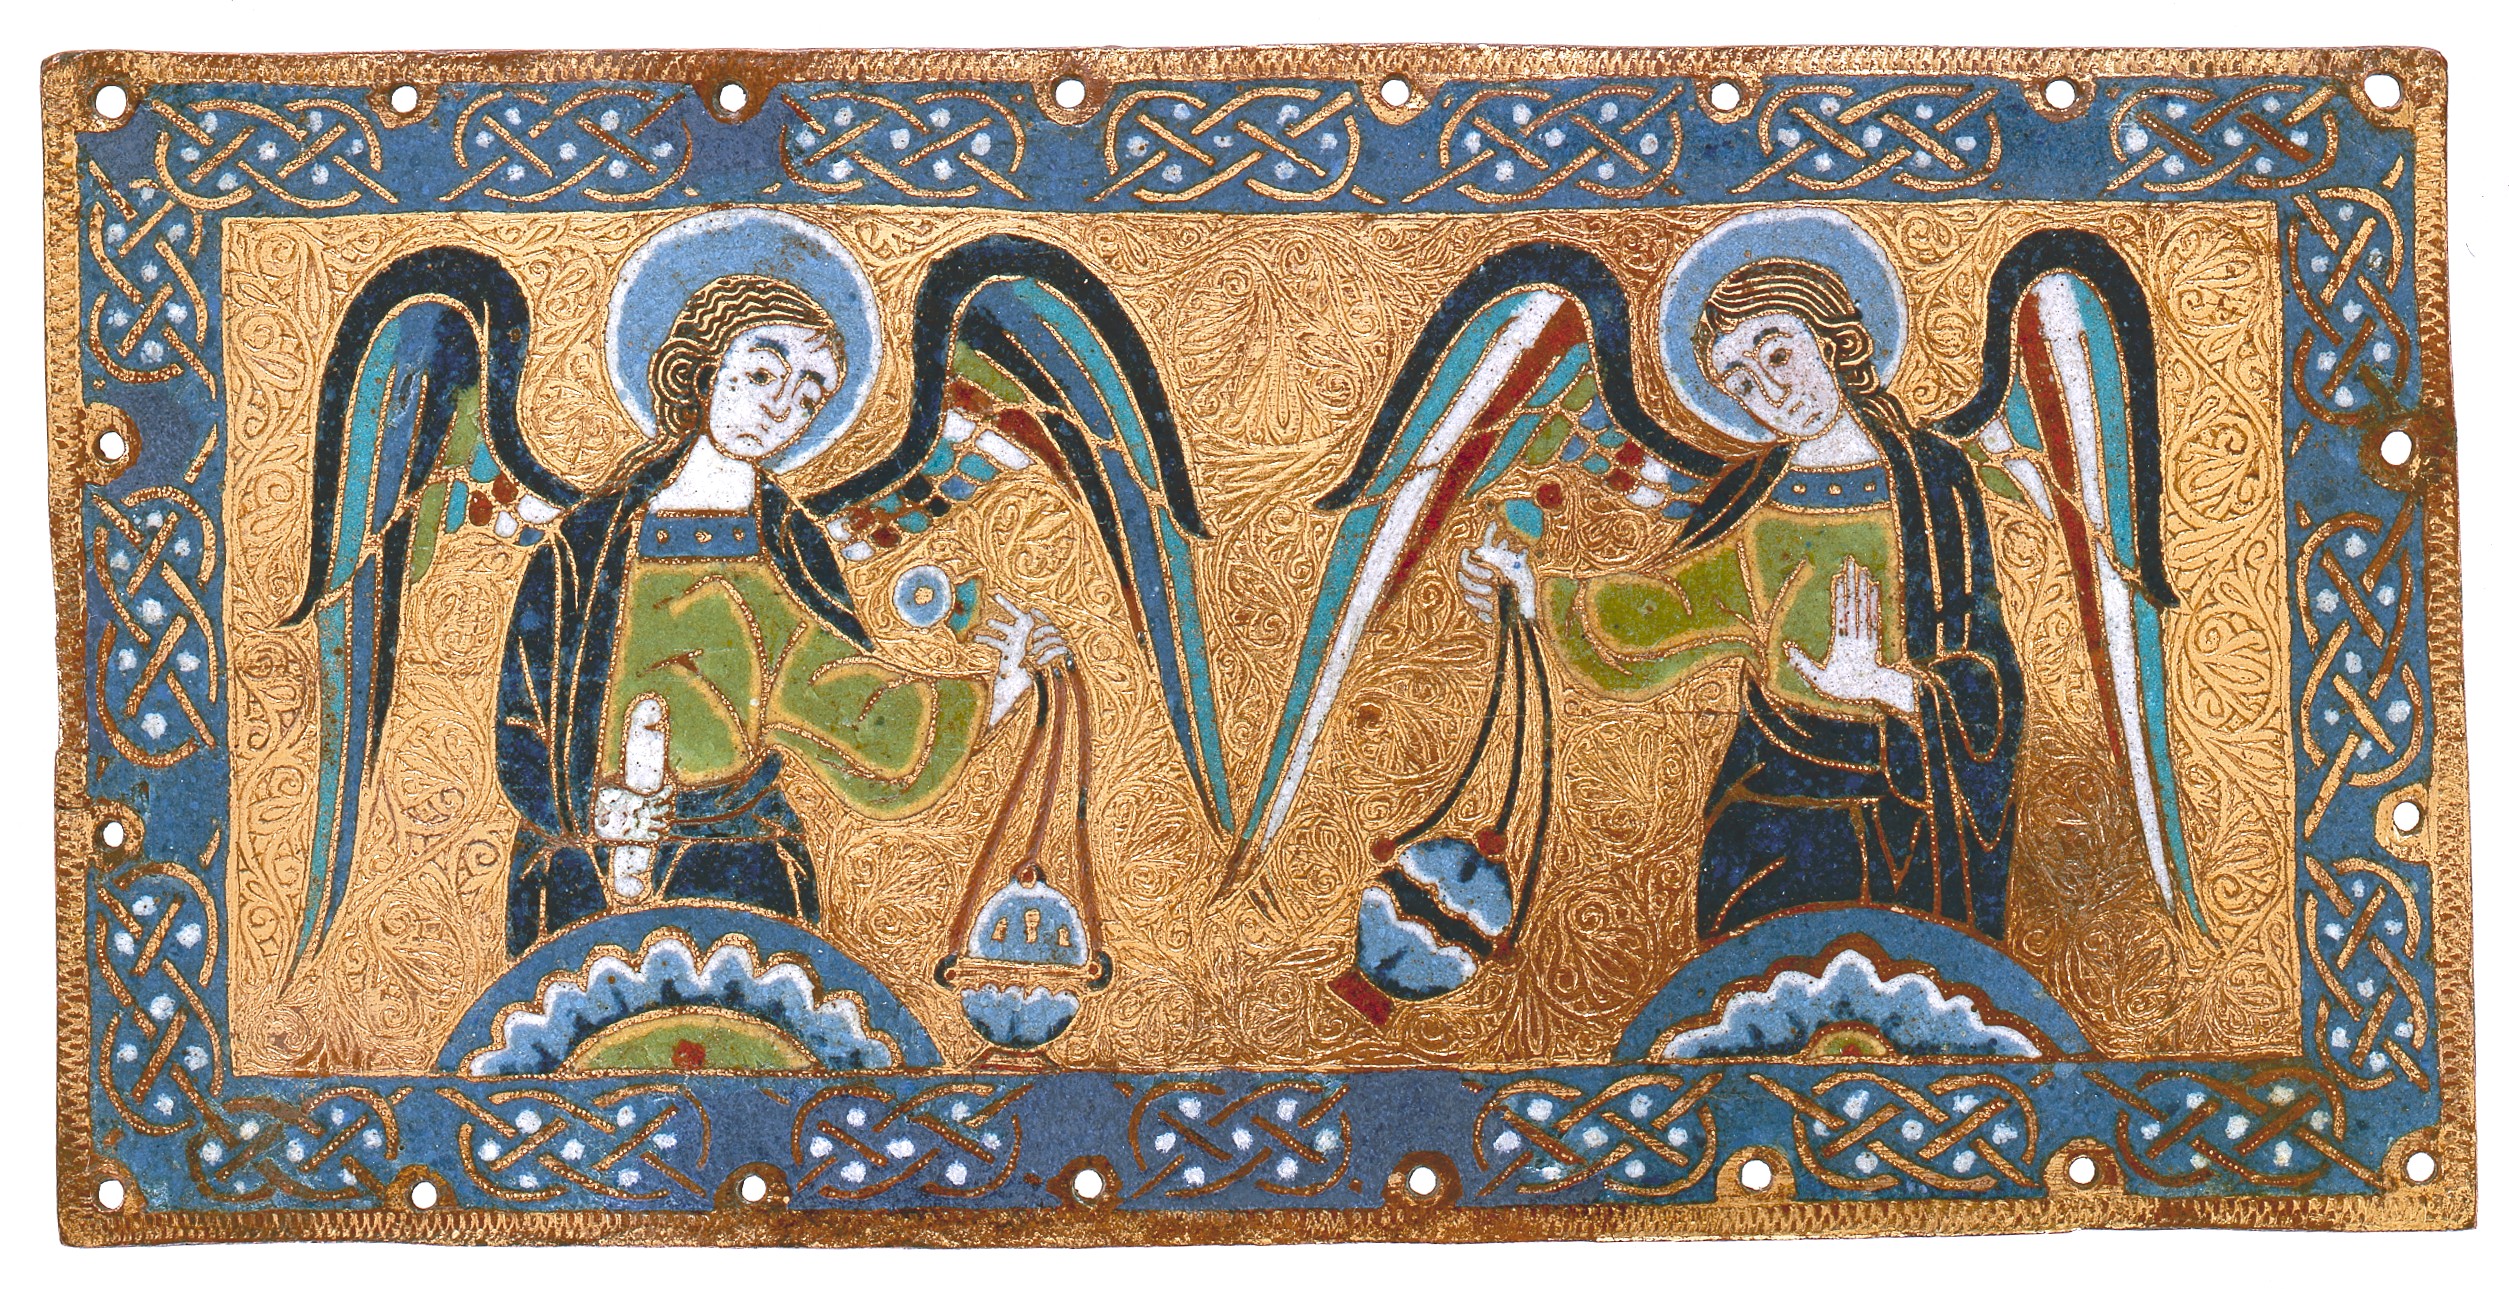 Placa com Anjos e Turíbulos by Artista Desconhecido - ca. 1170–80 - 11 x 22.1 x 0.3 cm 